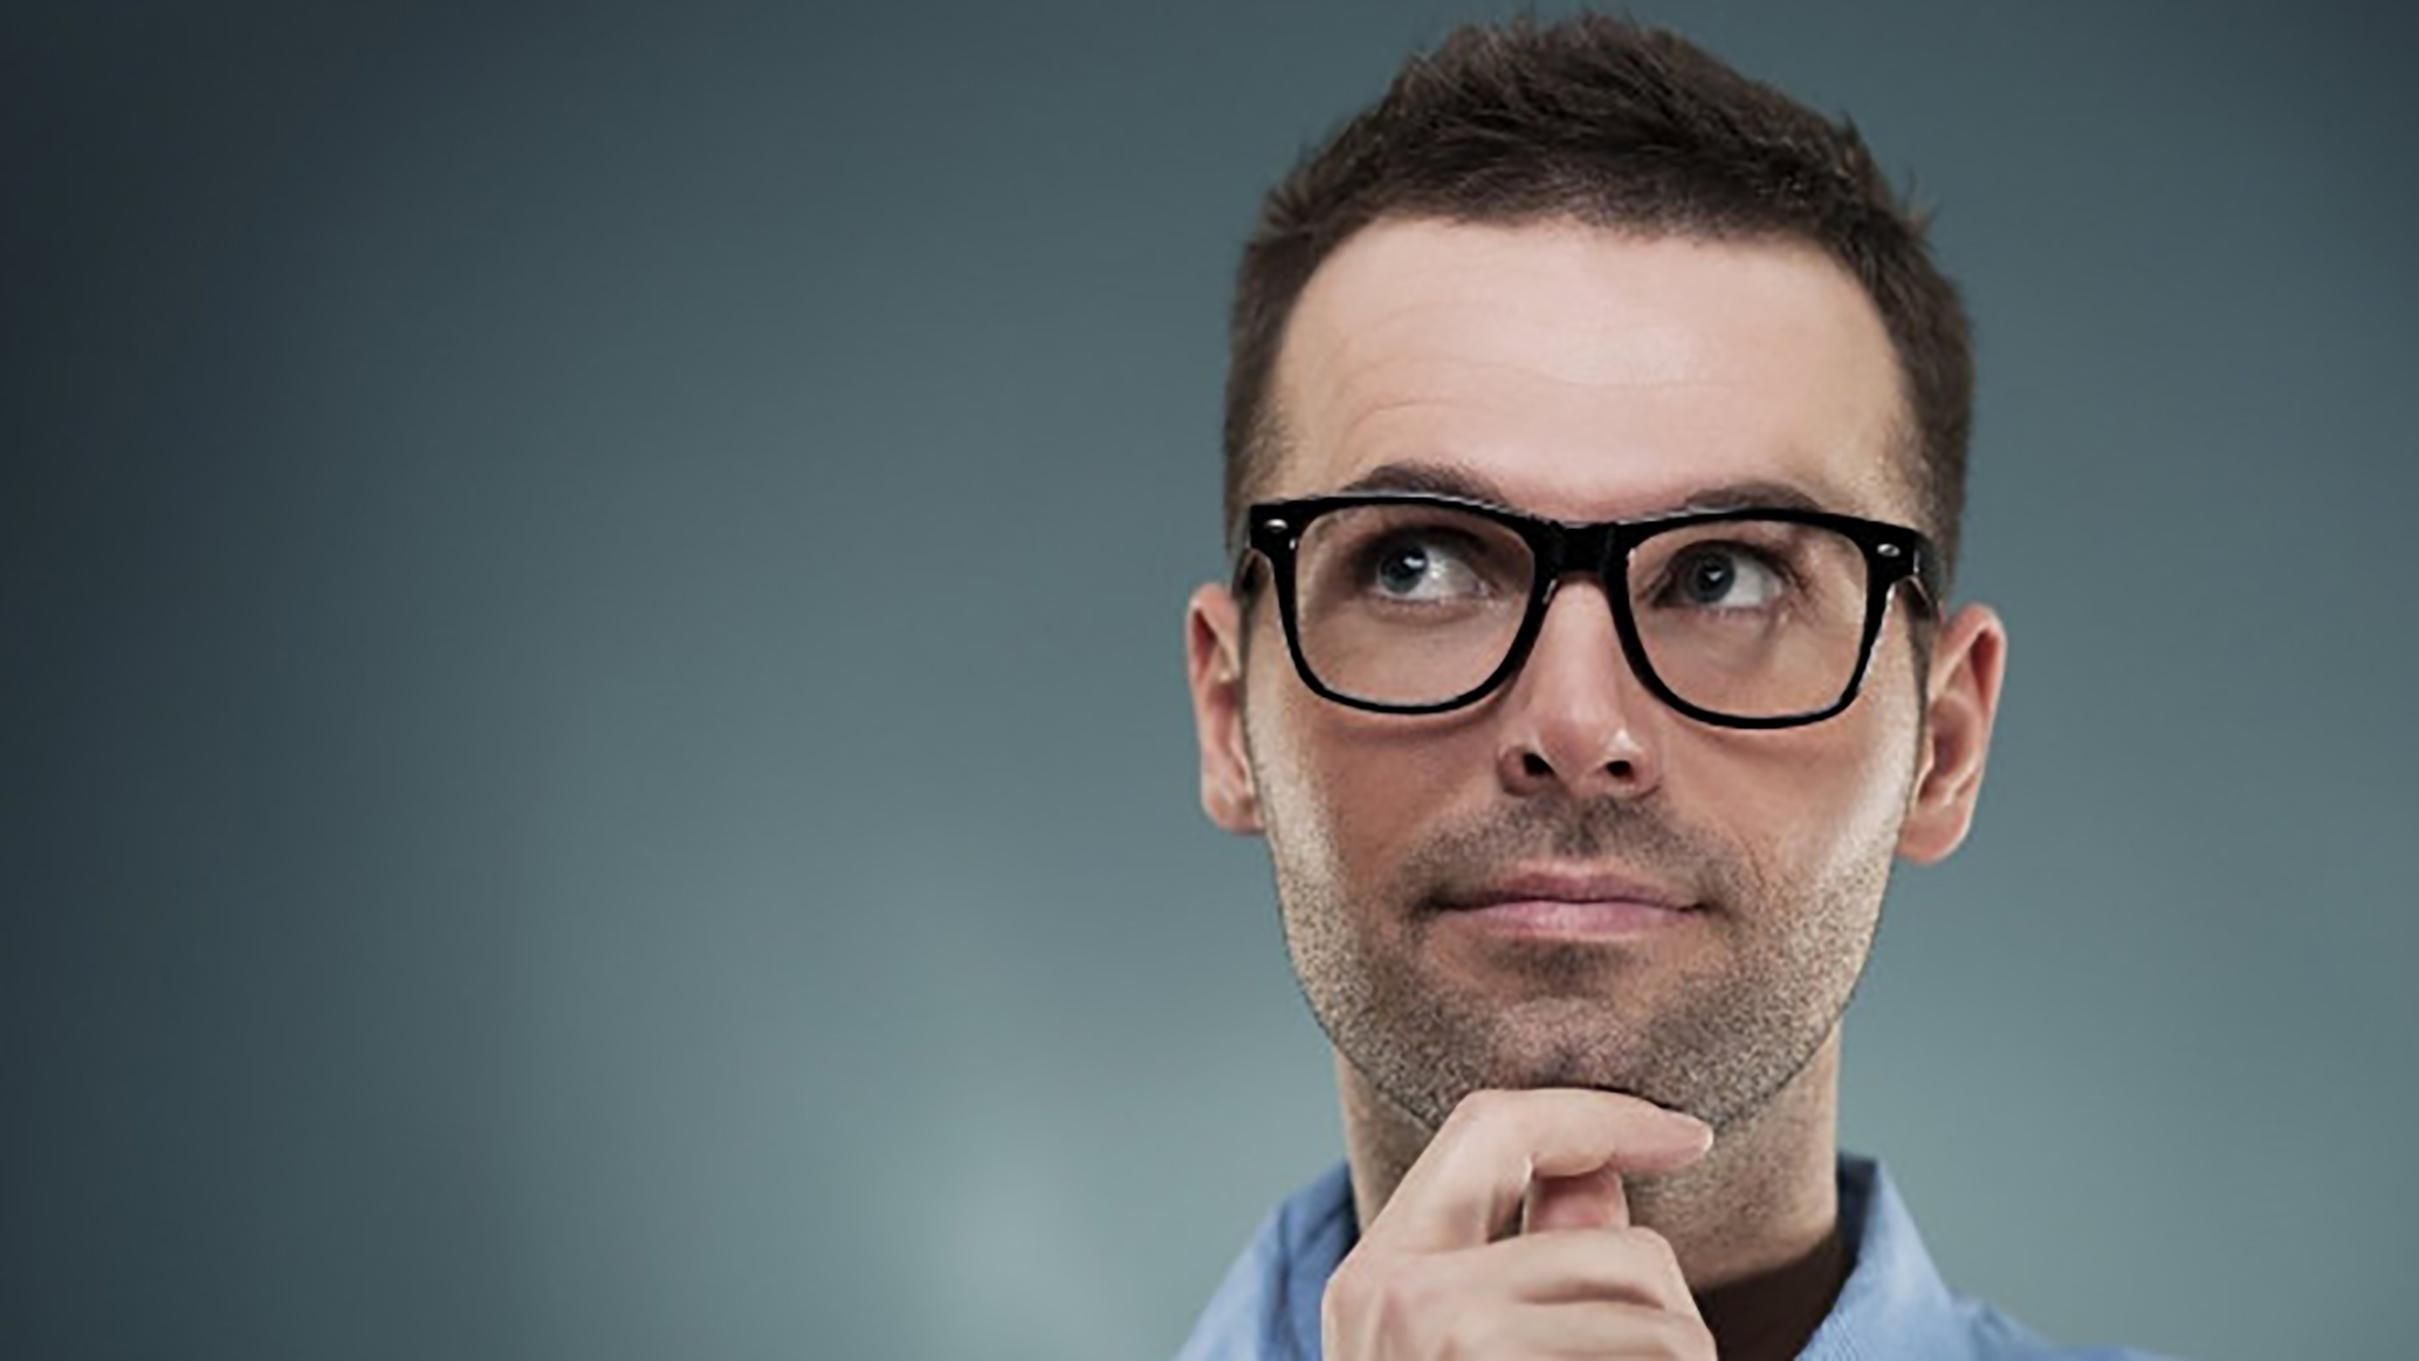 Люди, которые носят очки, умнее – ученые